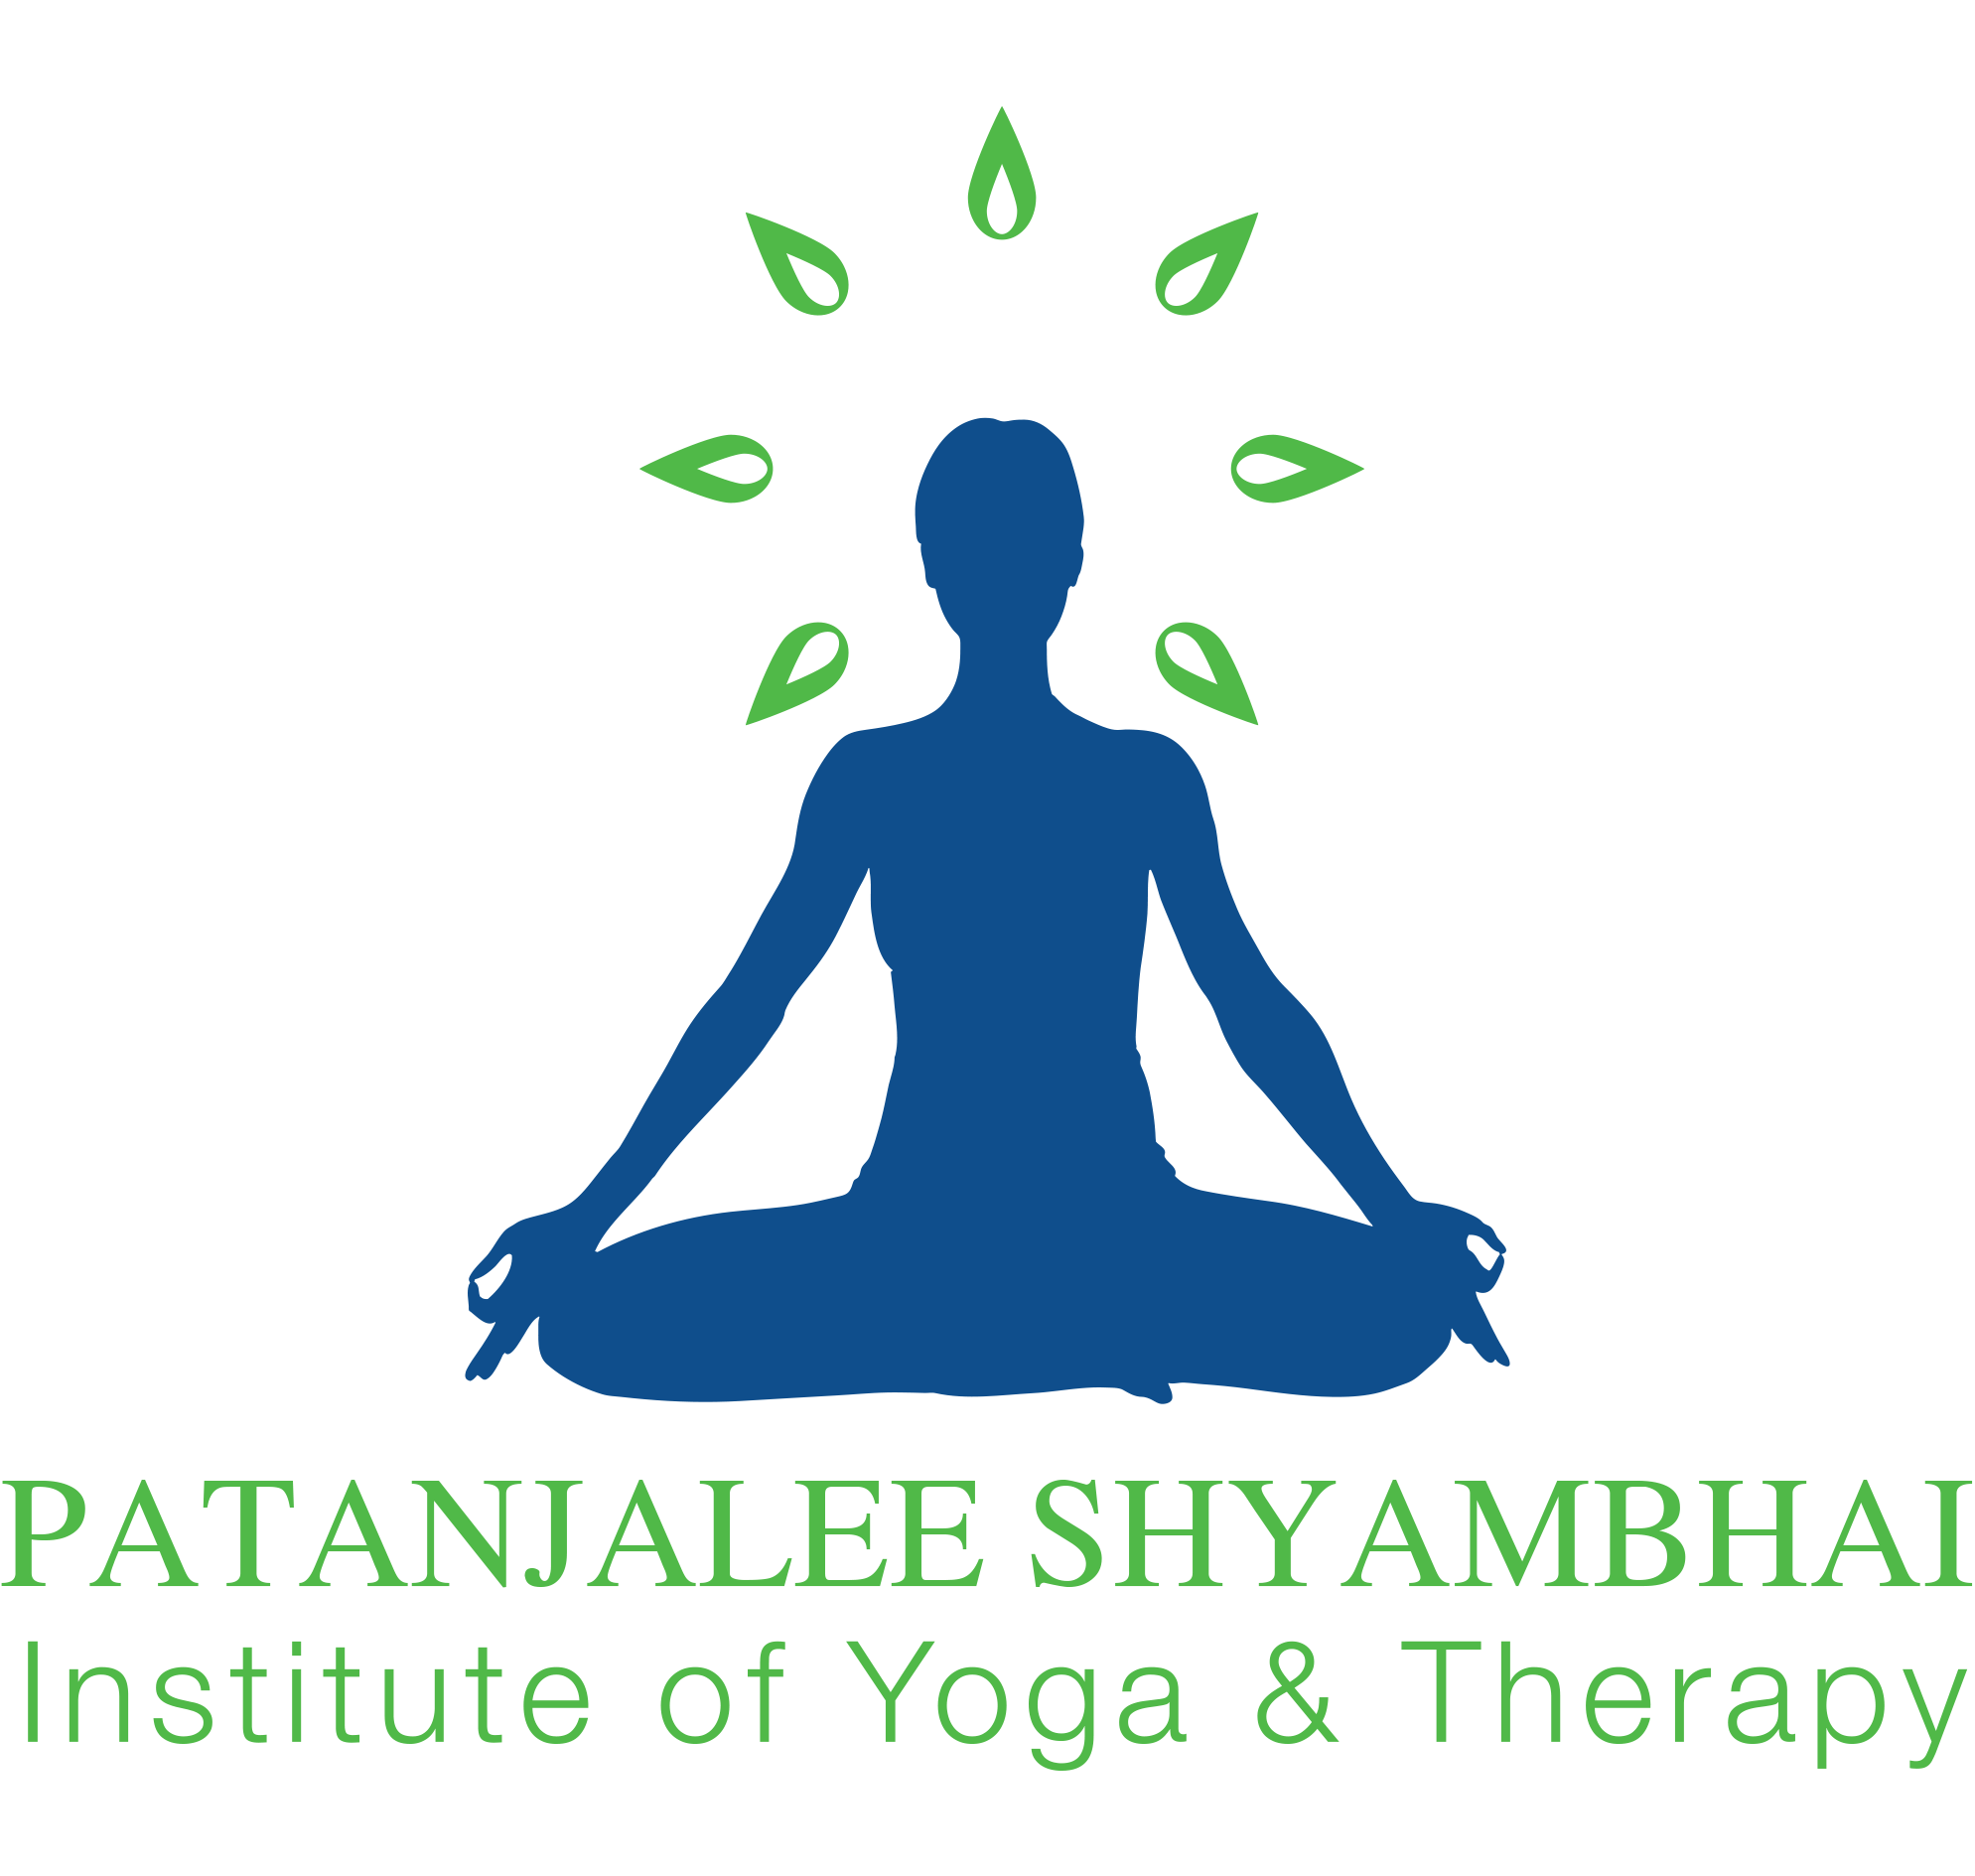 Patanjalee Shyambhai Logo